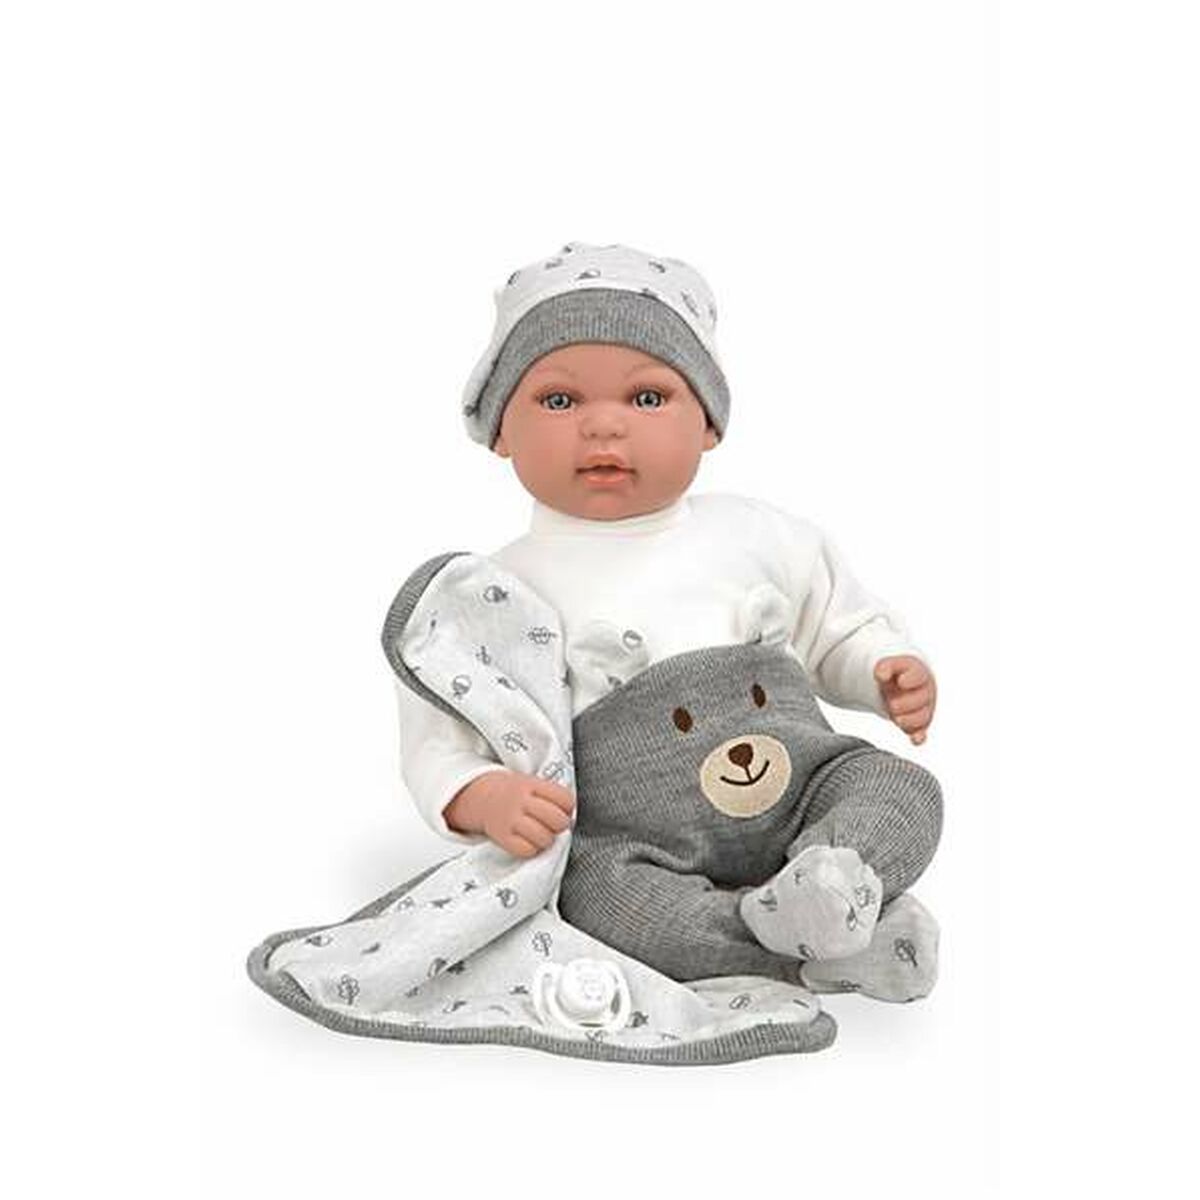 Osta tuote Vauvanukke Arias Elegance 45 cm verkkokaupastamme Korhone: Lelut & Asut 10% alennuksella koodilla KORHONE